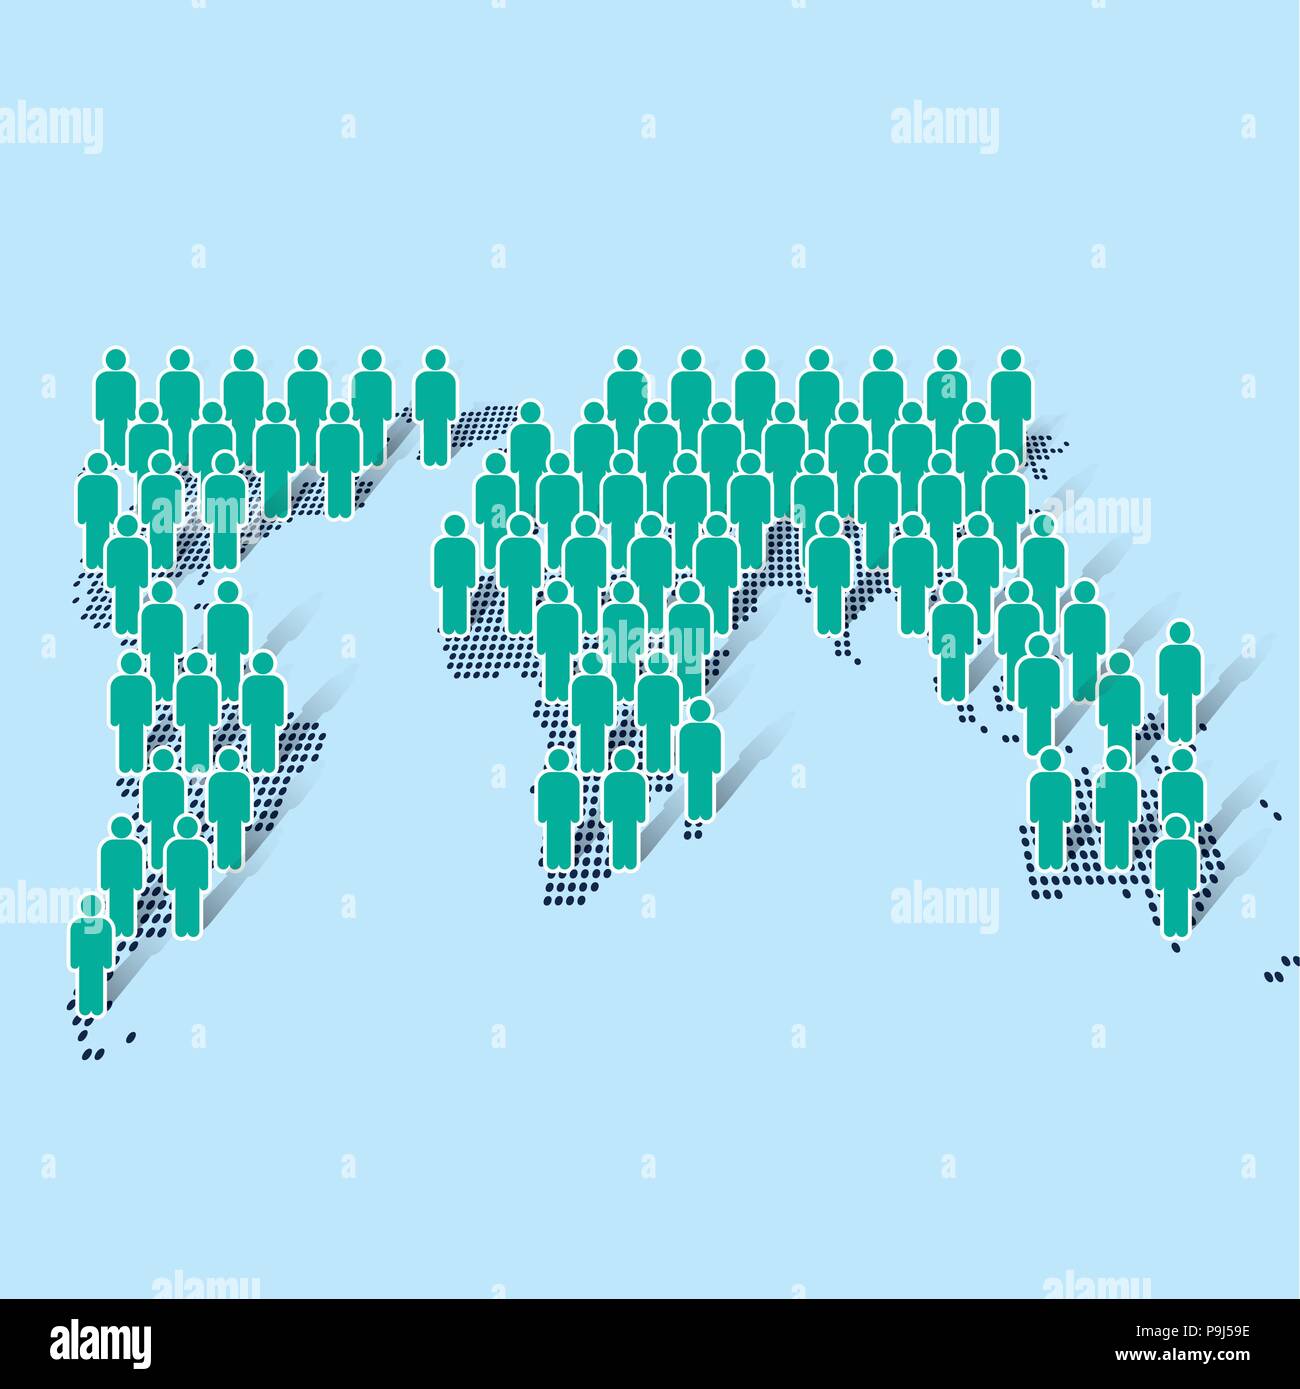 Geschäftsmann Symbol stehend auf modernen Welt Karte auf blauem Hintergrund. Für soziale, Bevölkerung Begriff - Flachbild Vector Illustration Stock Vektor